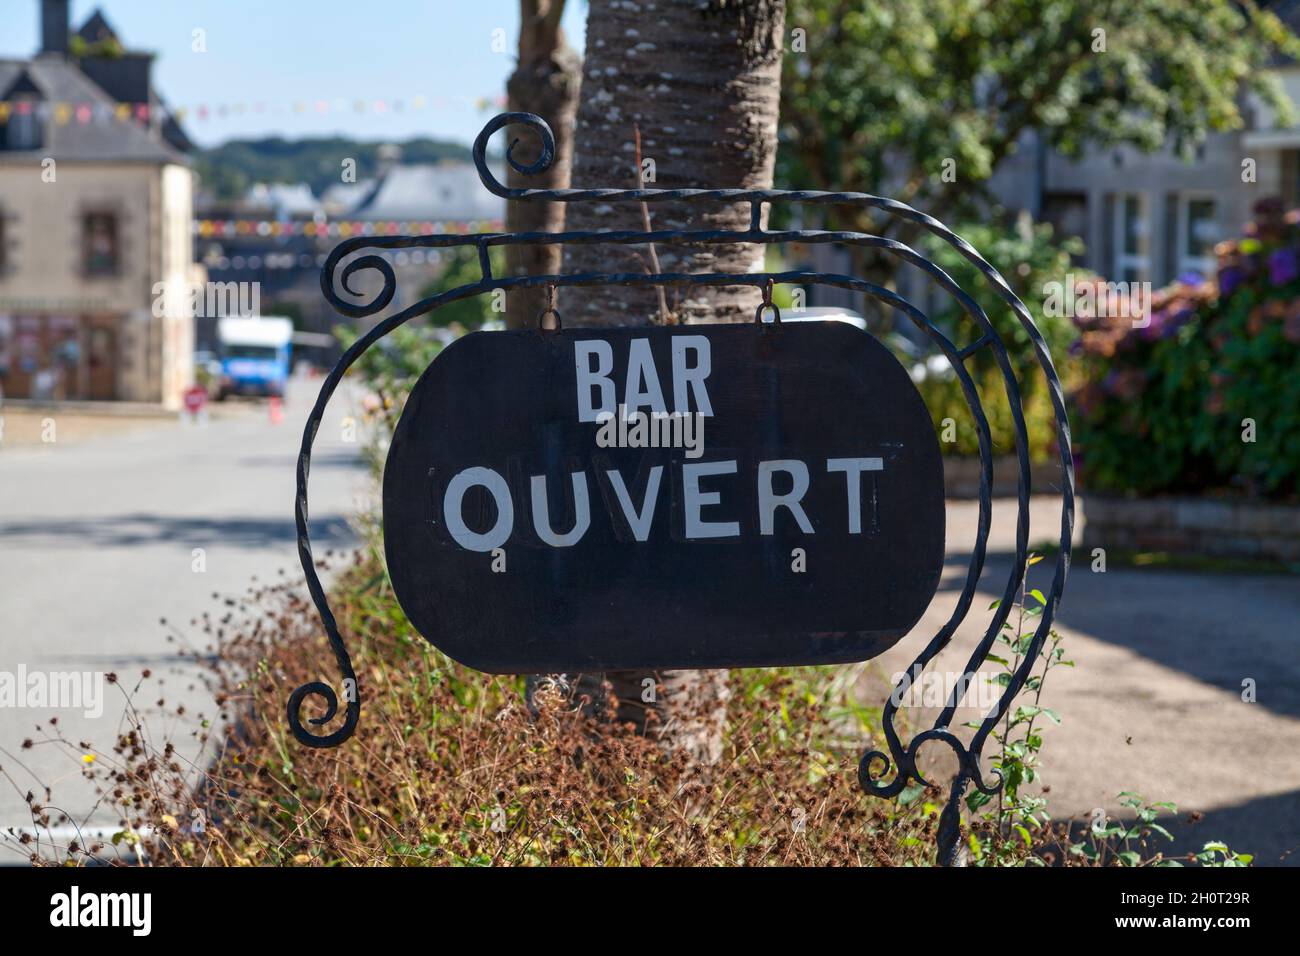 Primo piano su un cartello all'aperto che dice in francese 'Bar ouvert', che significa in inglese 'Bar Open'. Foto Stock